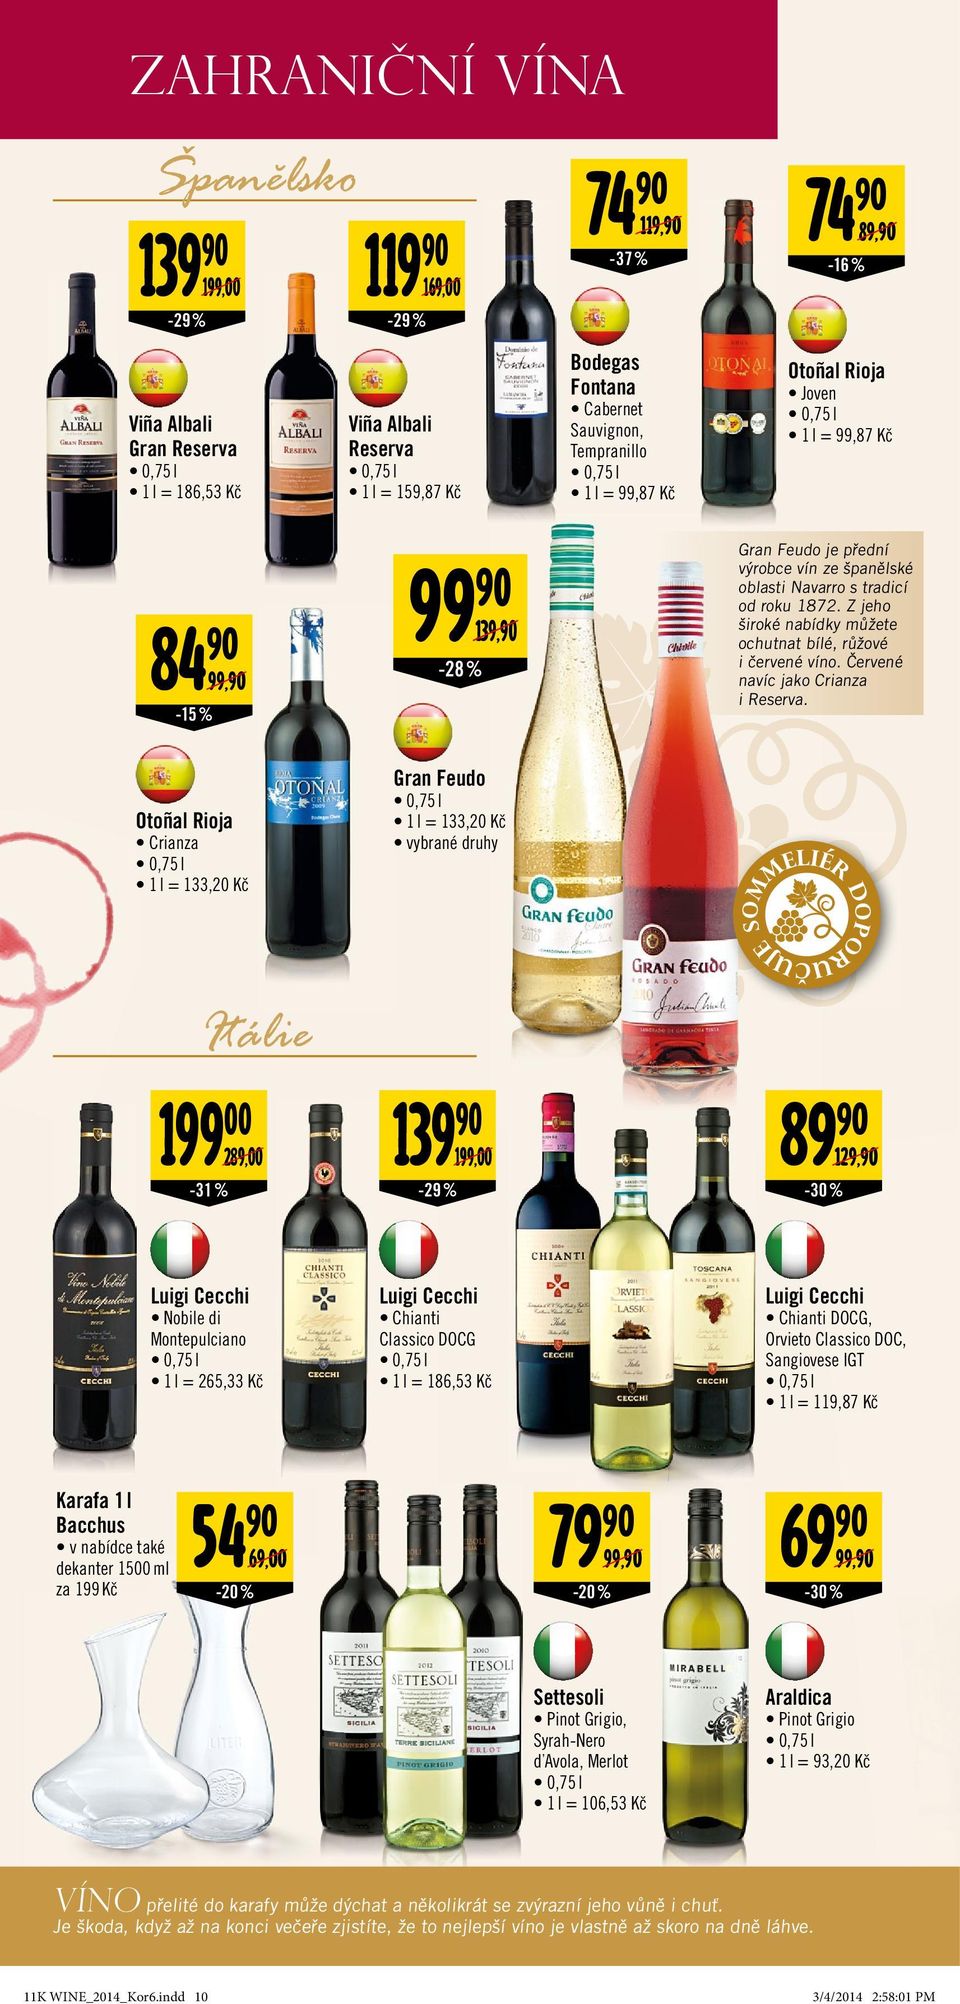 1872. Z jeho široké nabídky můžete ochutnat bílé, růžové i červené víno. Červené navíc jako Crianza i Reserva.